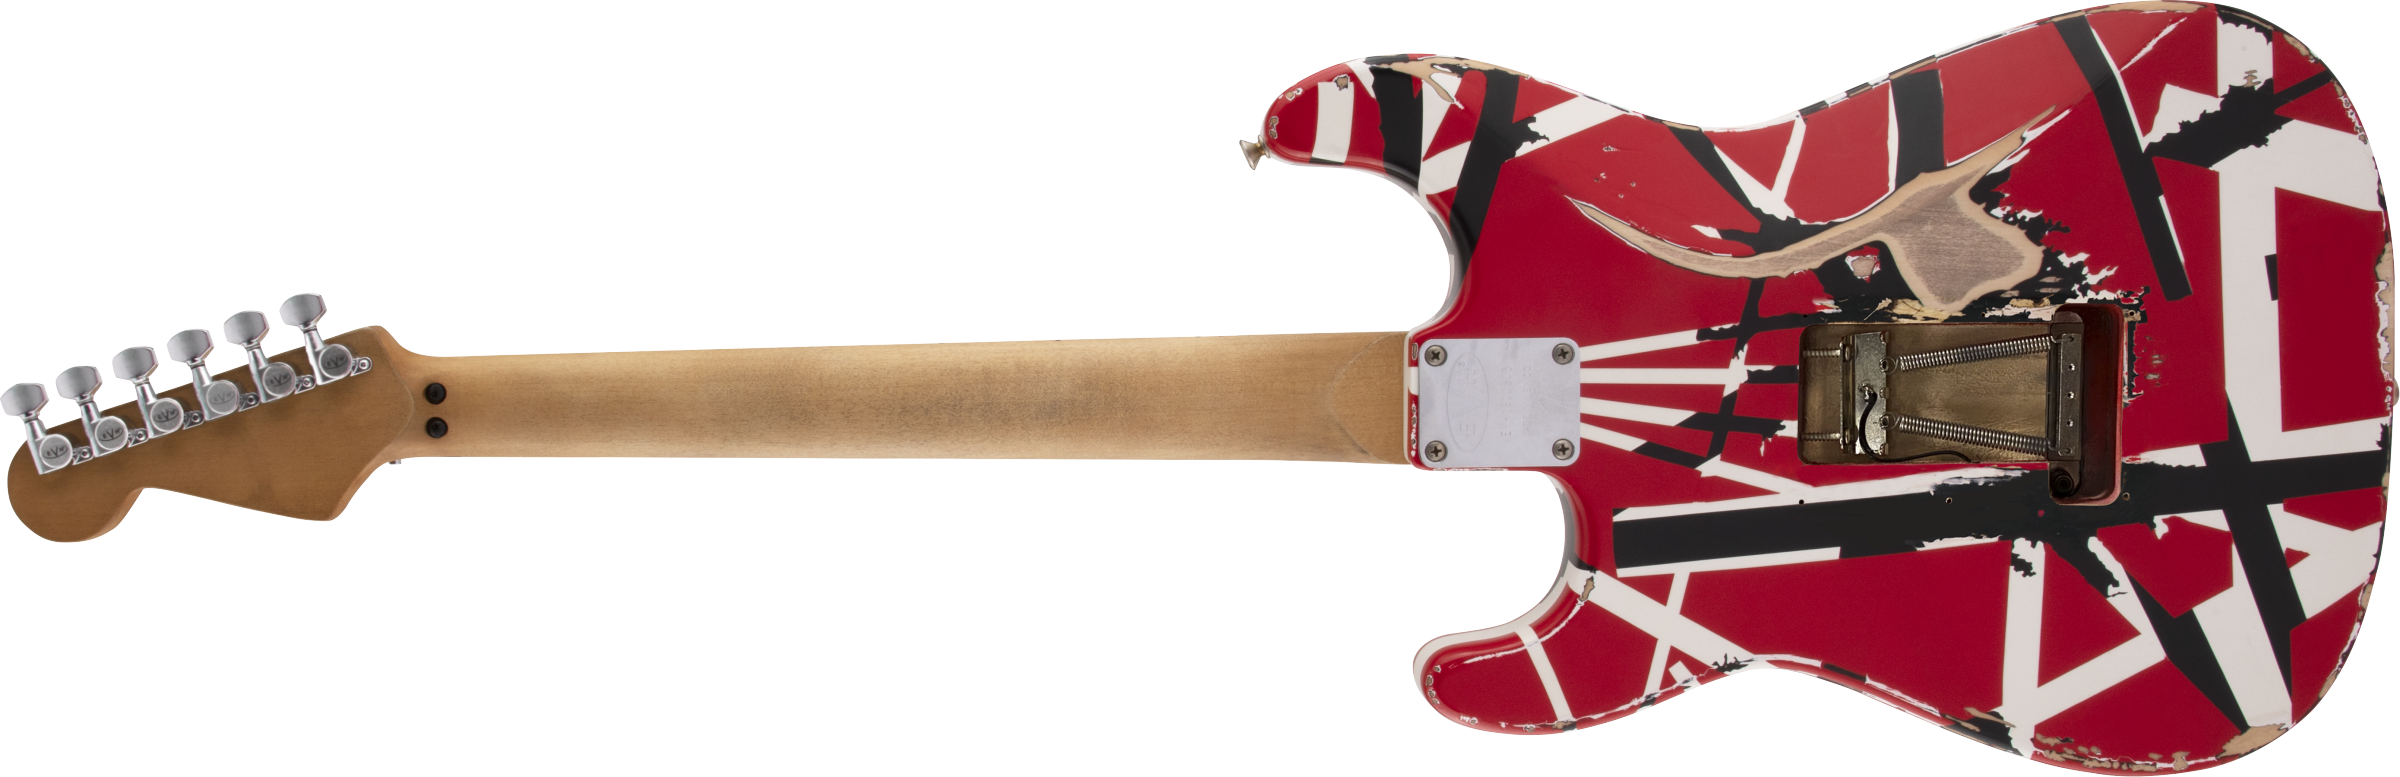 Evh Eddie Van Halen Frankenstein Frankie Striped Series Mex H Fr Mn - Red With Black & White Stripes - E-Gitarre in Str-Form - Variation 1